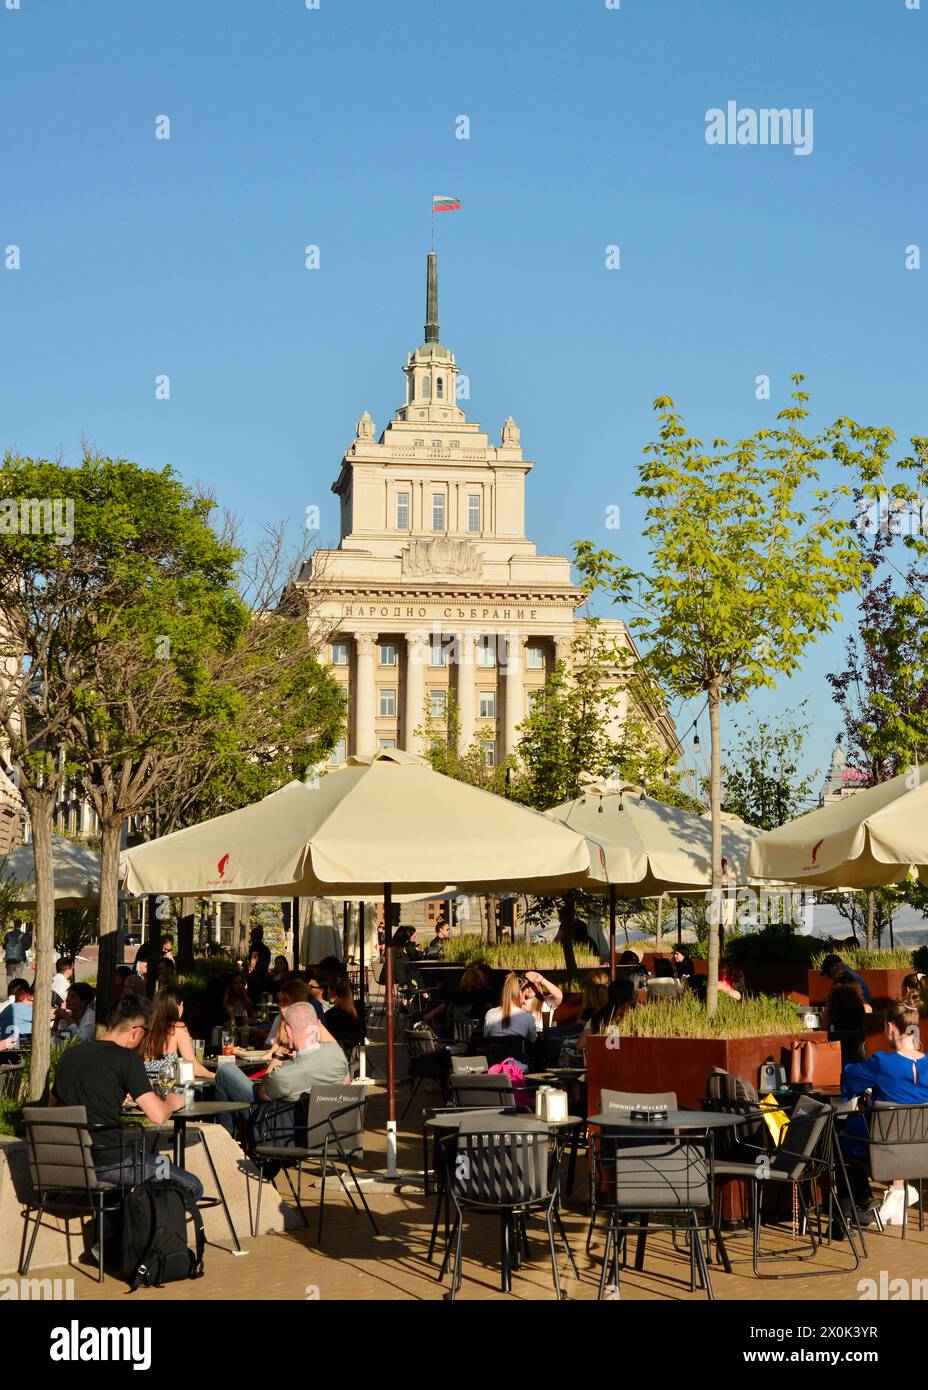 Café im Freien und Gäste, die im Freien im ehemaligen kommunistischen Parteihaus in Sofia, Bulgarien, Osteuropa, Balkan, EU essen Stockfoto